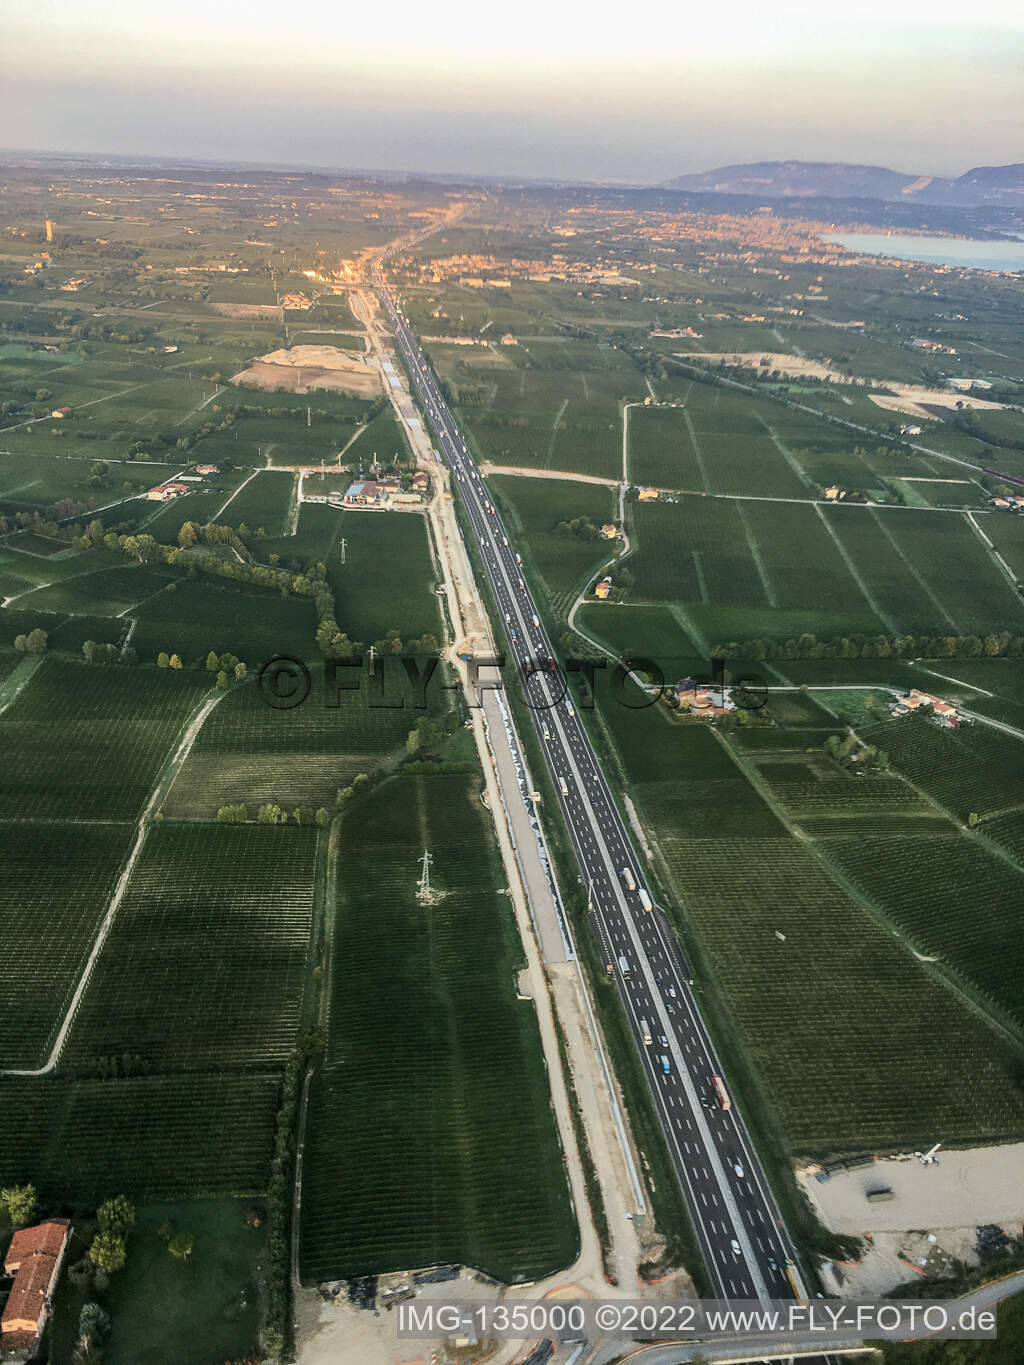 Vue aérienne de Pozzolengo dans le département Brescia, Italie